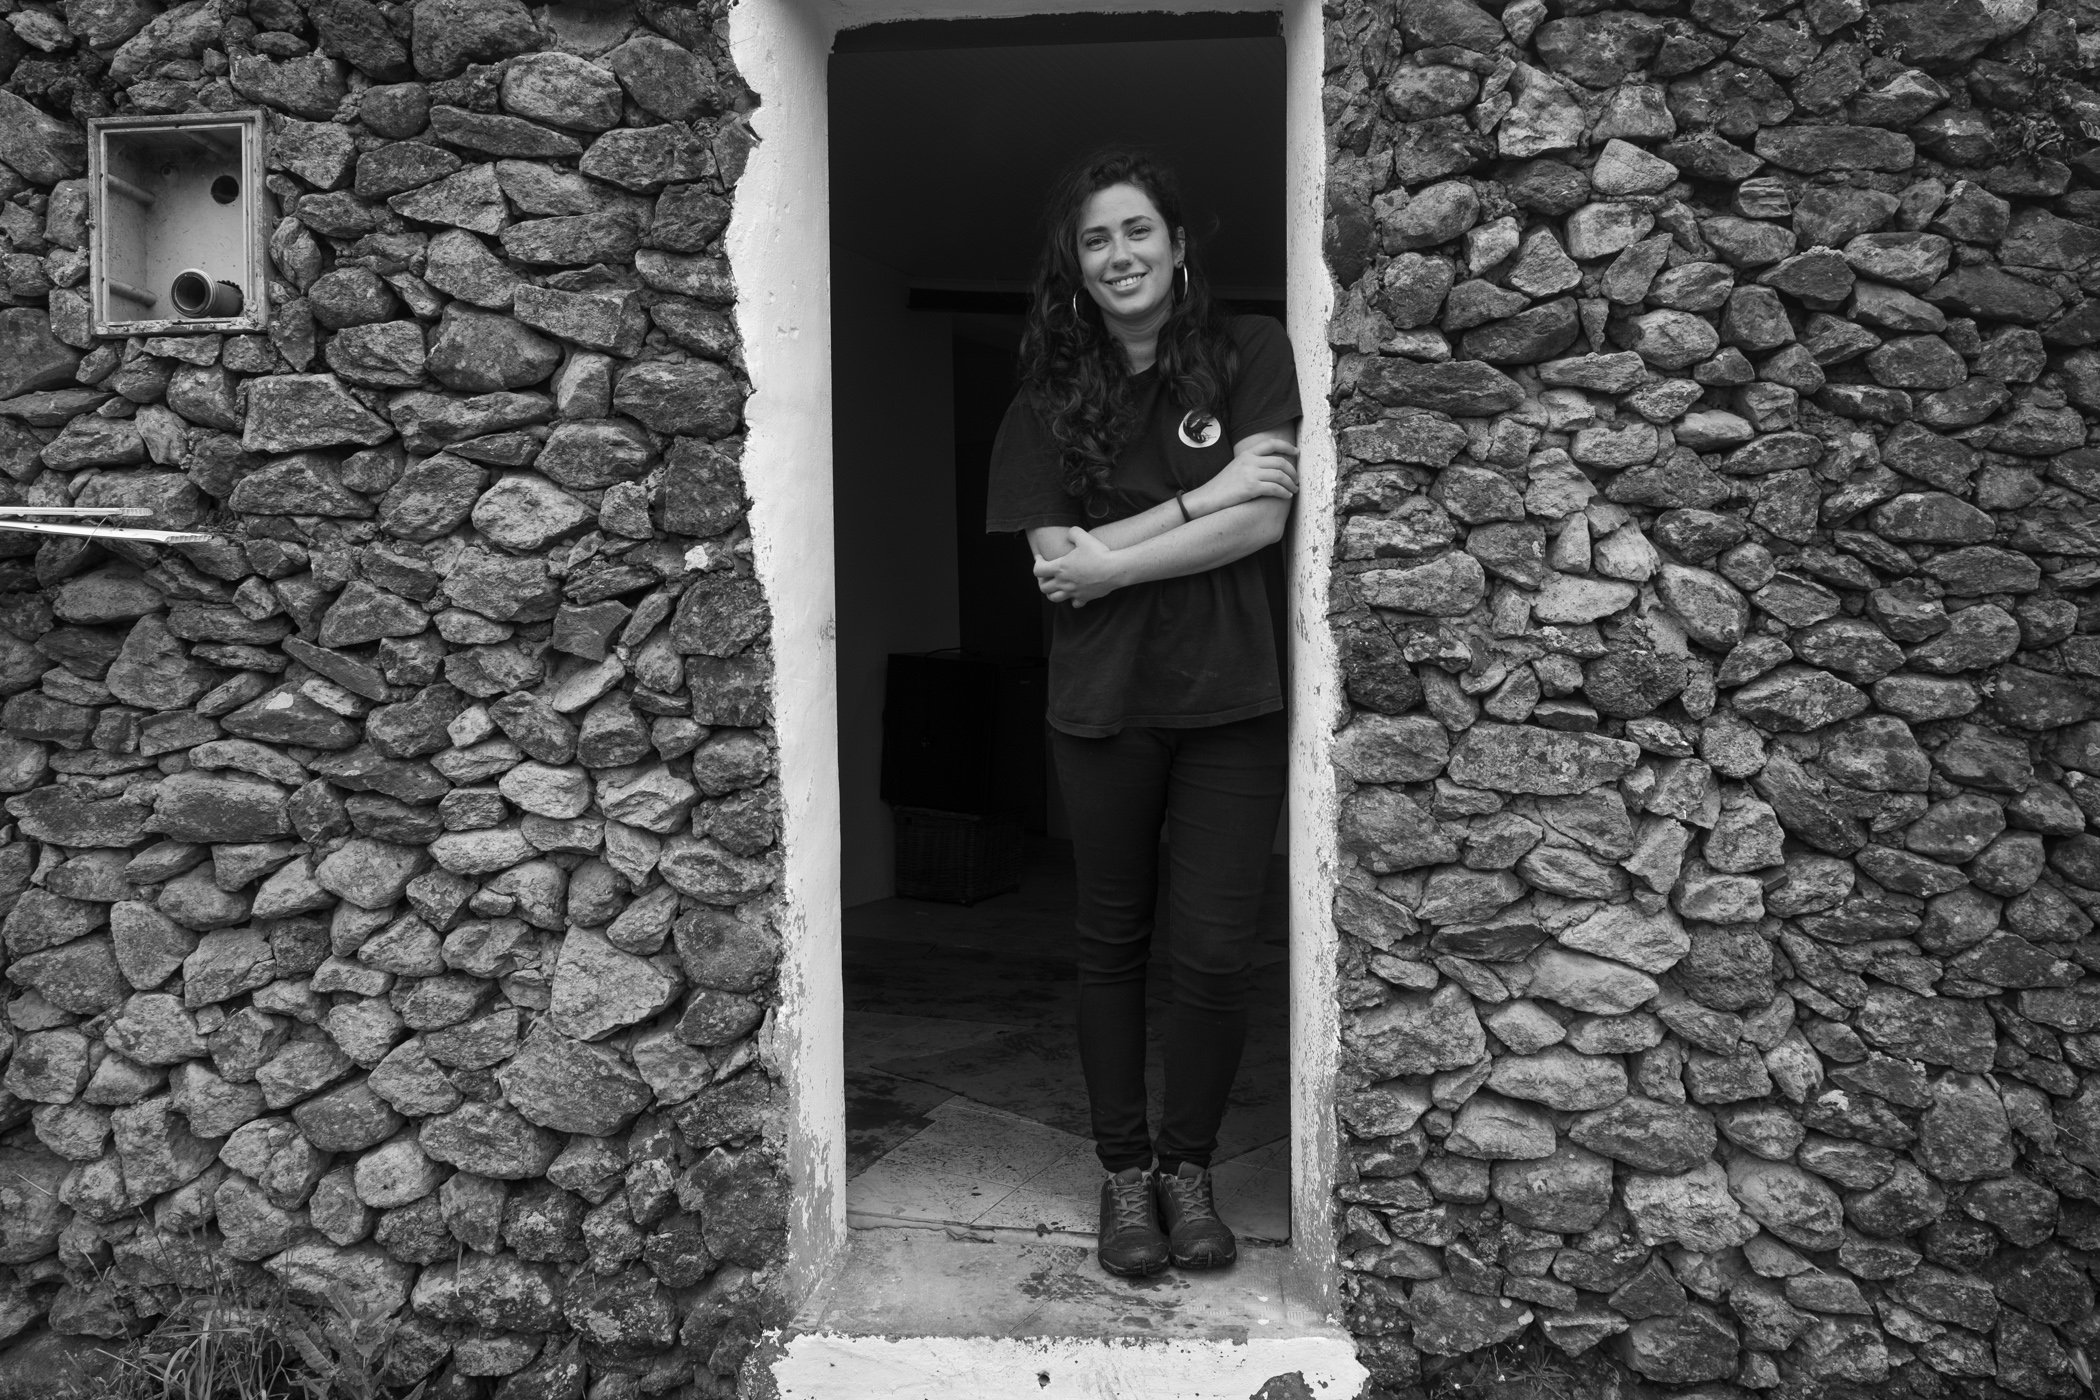  Lisandra Mendoza, veterinarian at Asinus Atlanticus, Donkey Farm/Milk. Terceira, Portugal.   